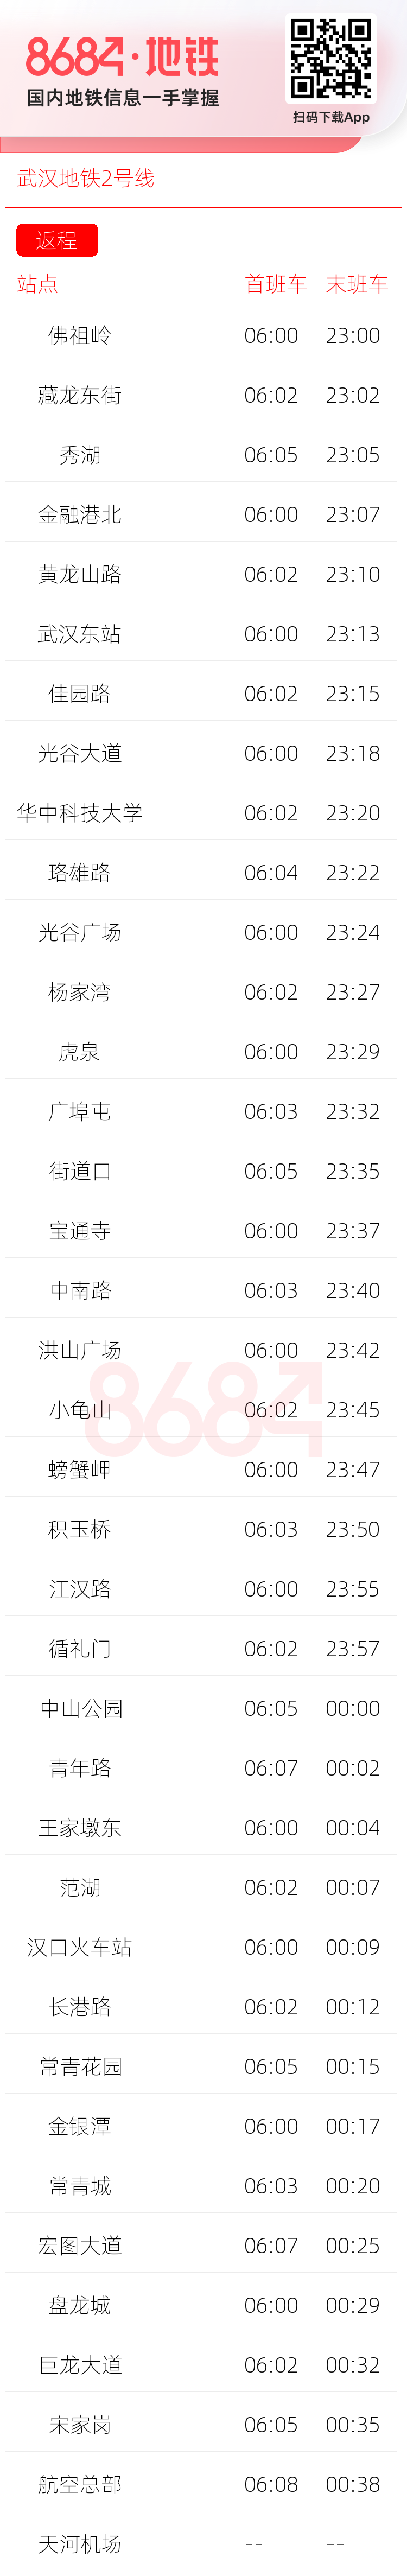 武汉地铁2号线运营时间表